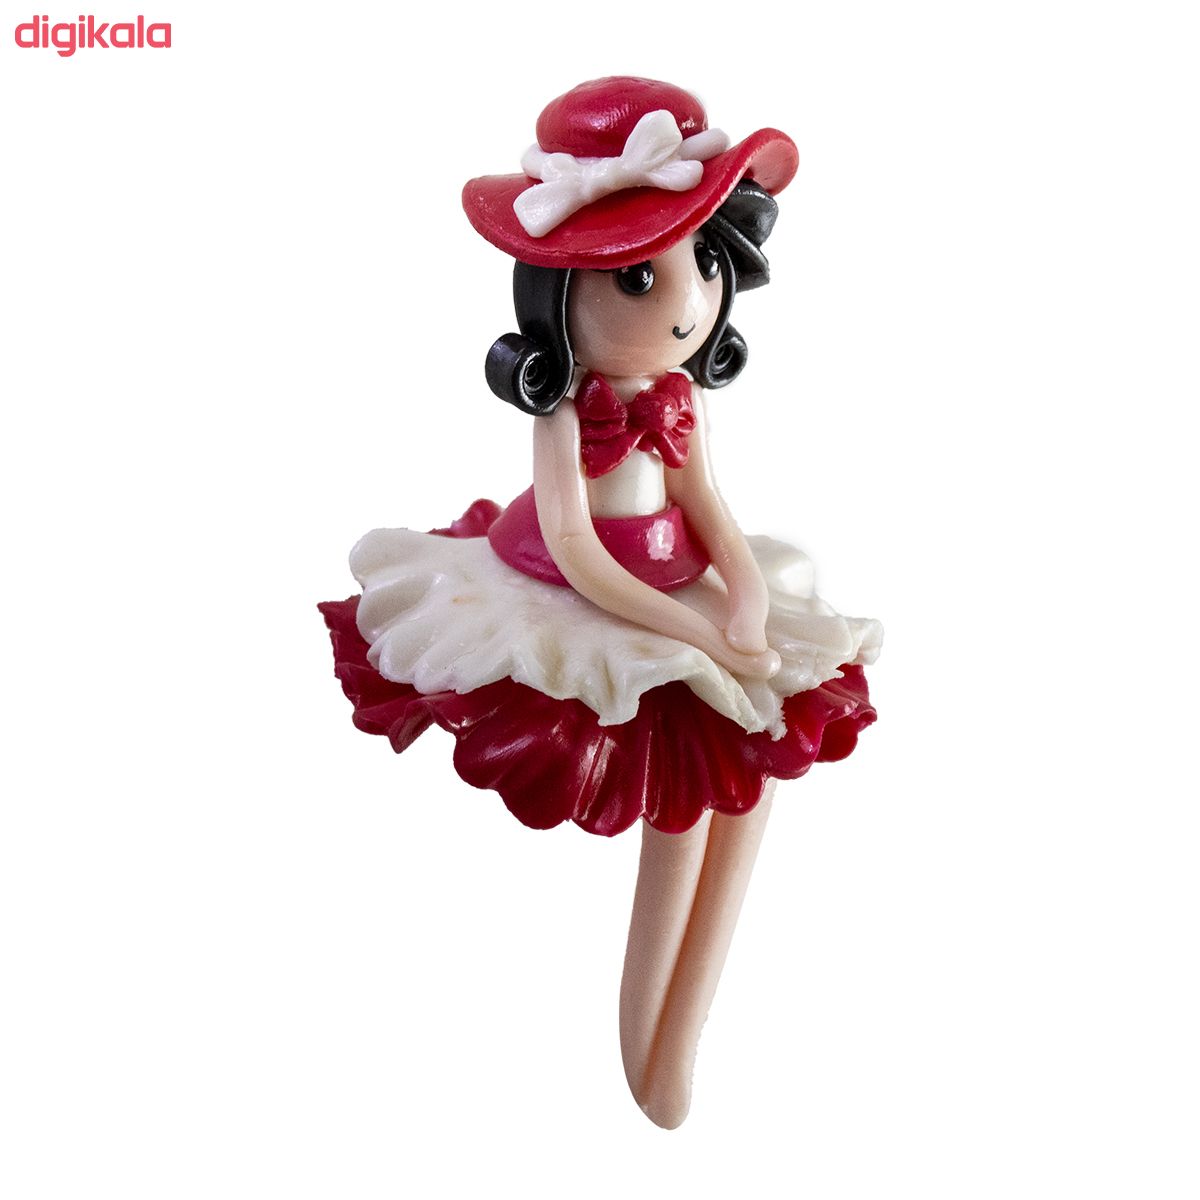  خرید اینترنتی با تخفیف ویژه دکوری مدل دختر کلاه فرانسوی کد 111